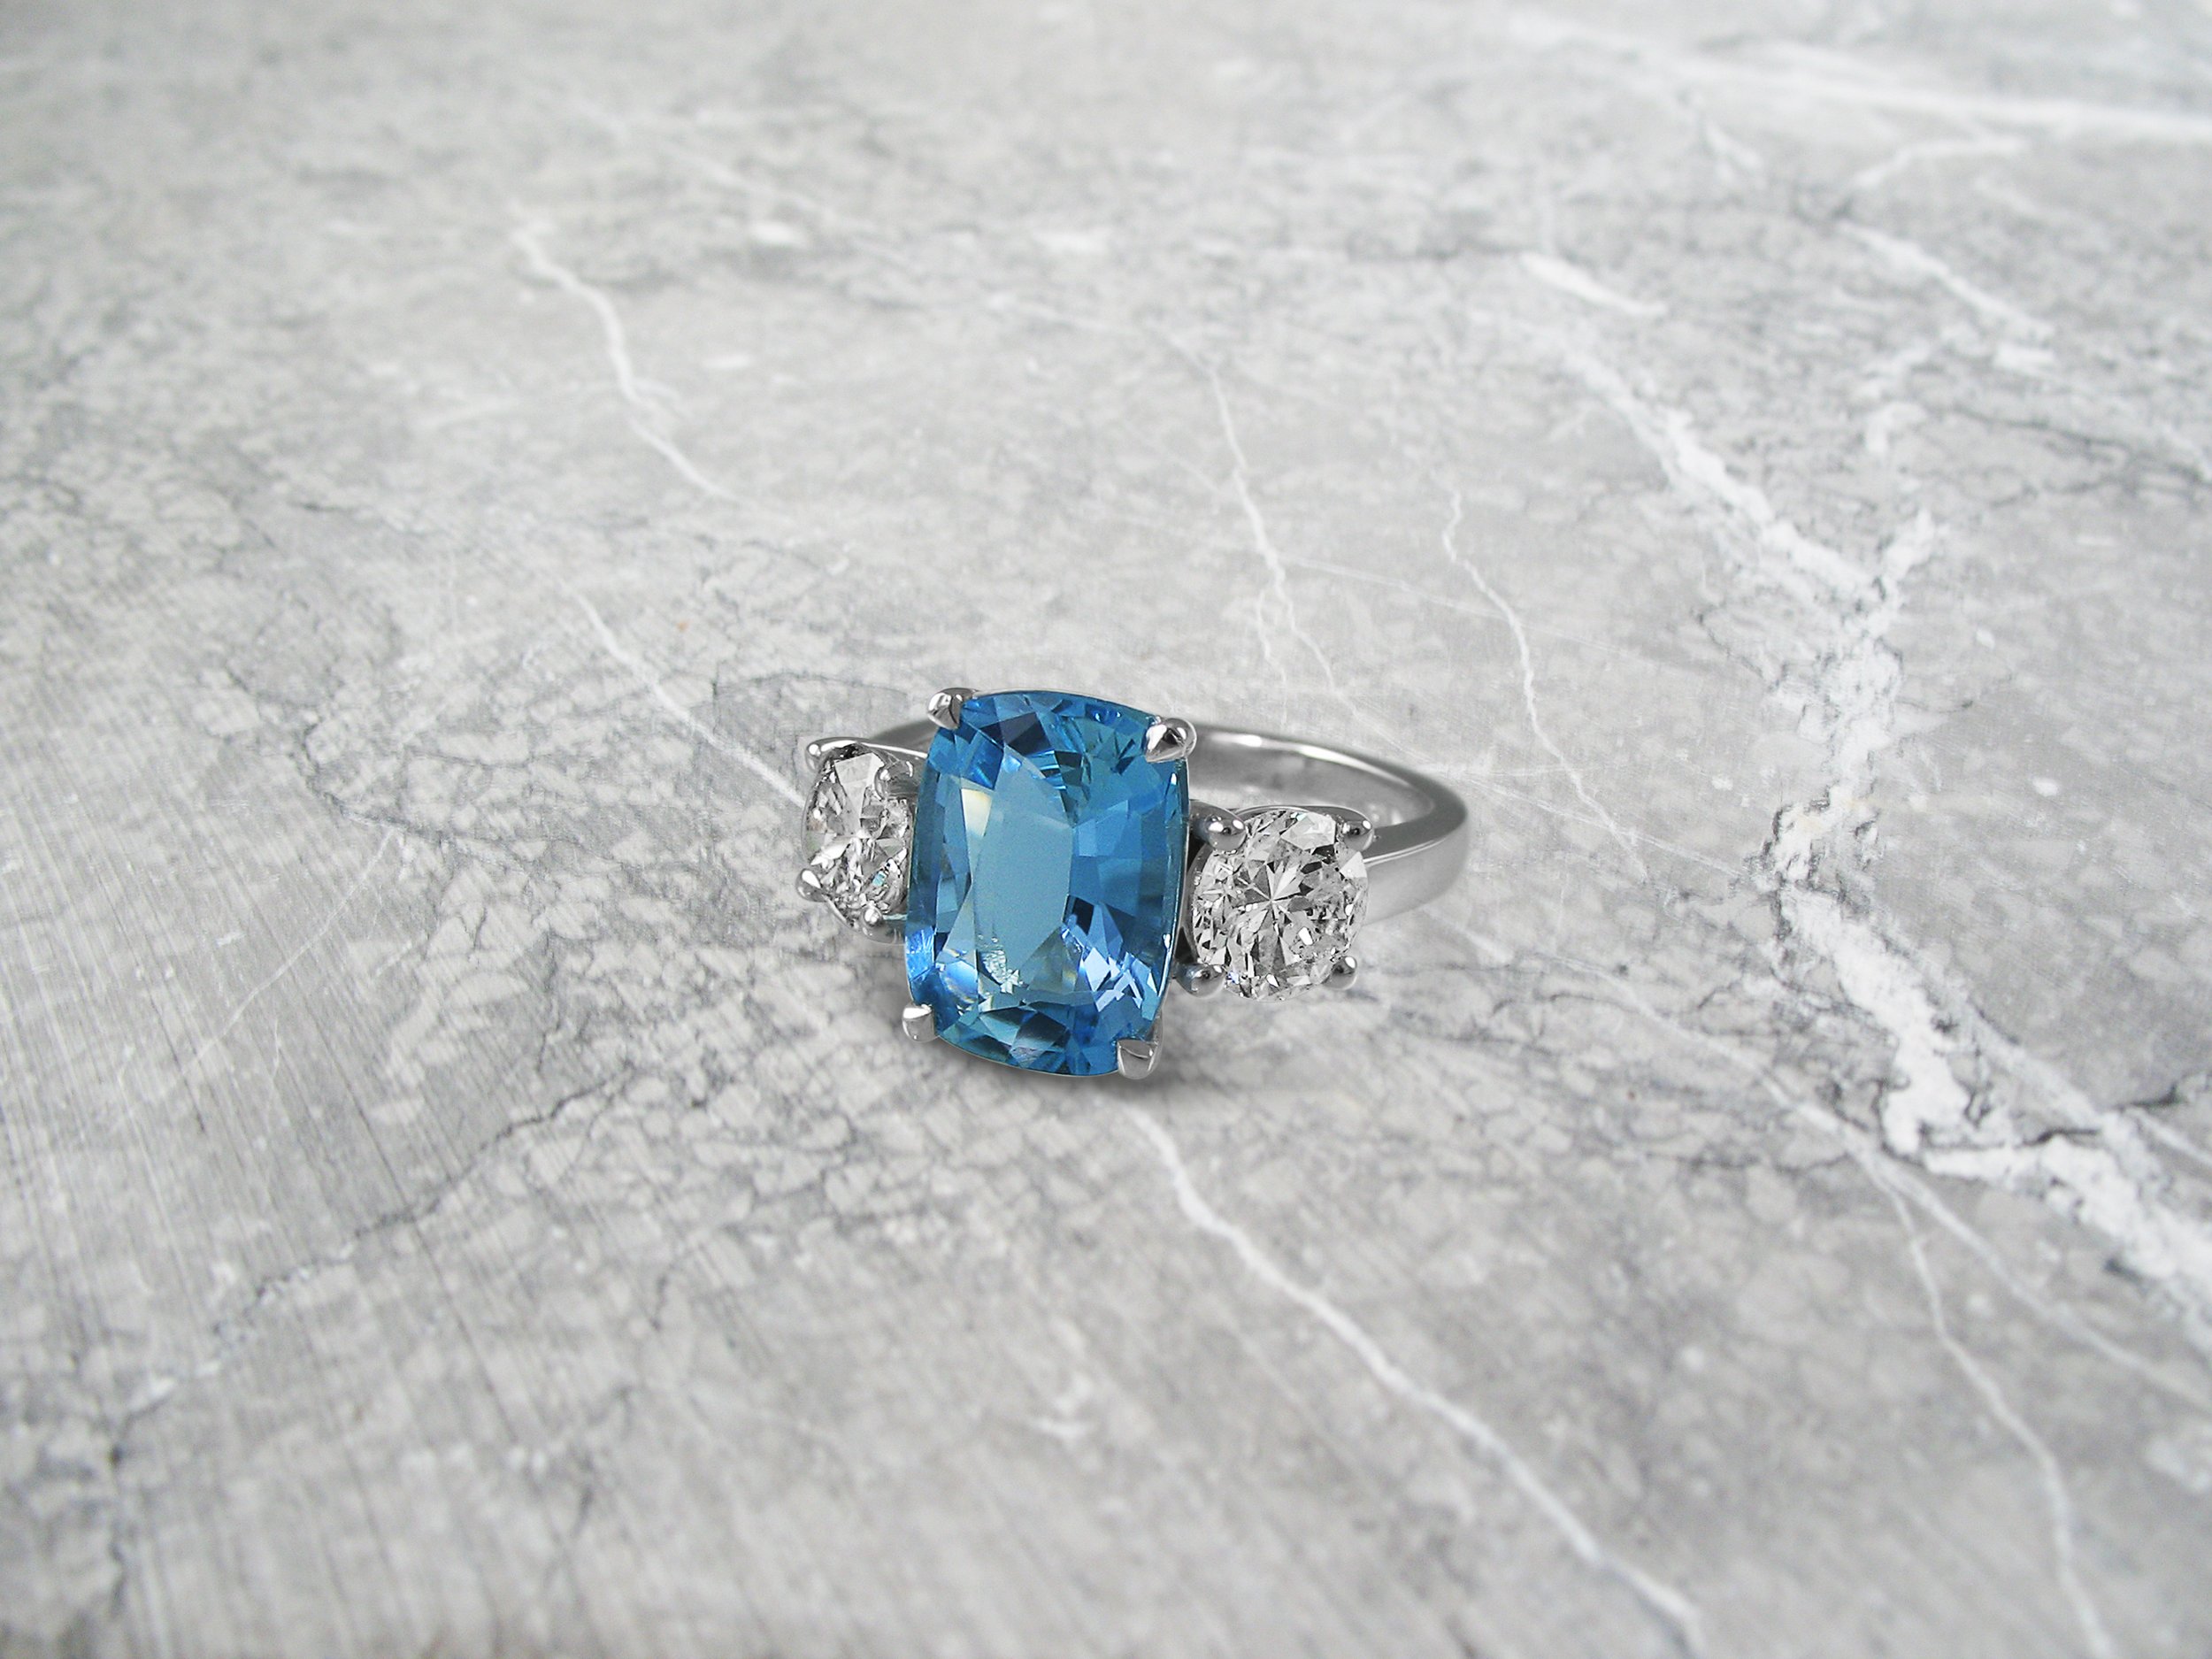 Vintage style aquamarine band and diamond engagement ring